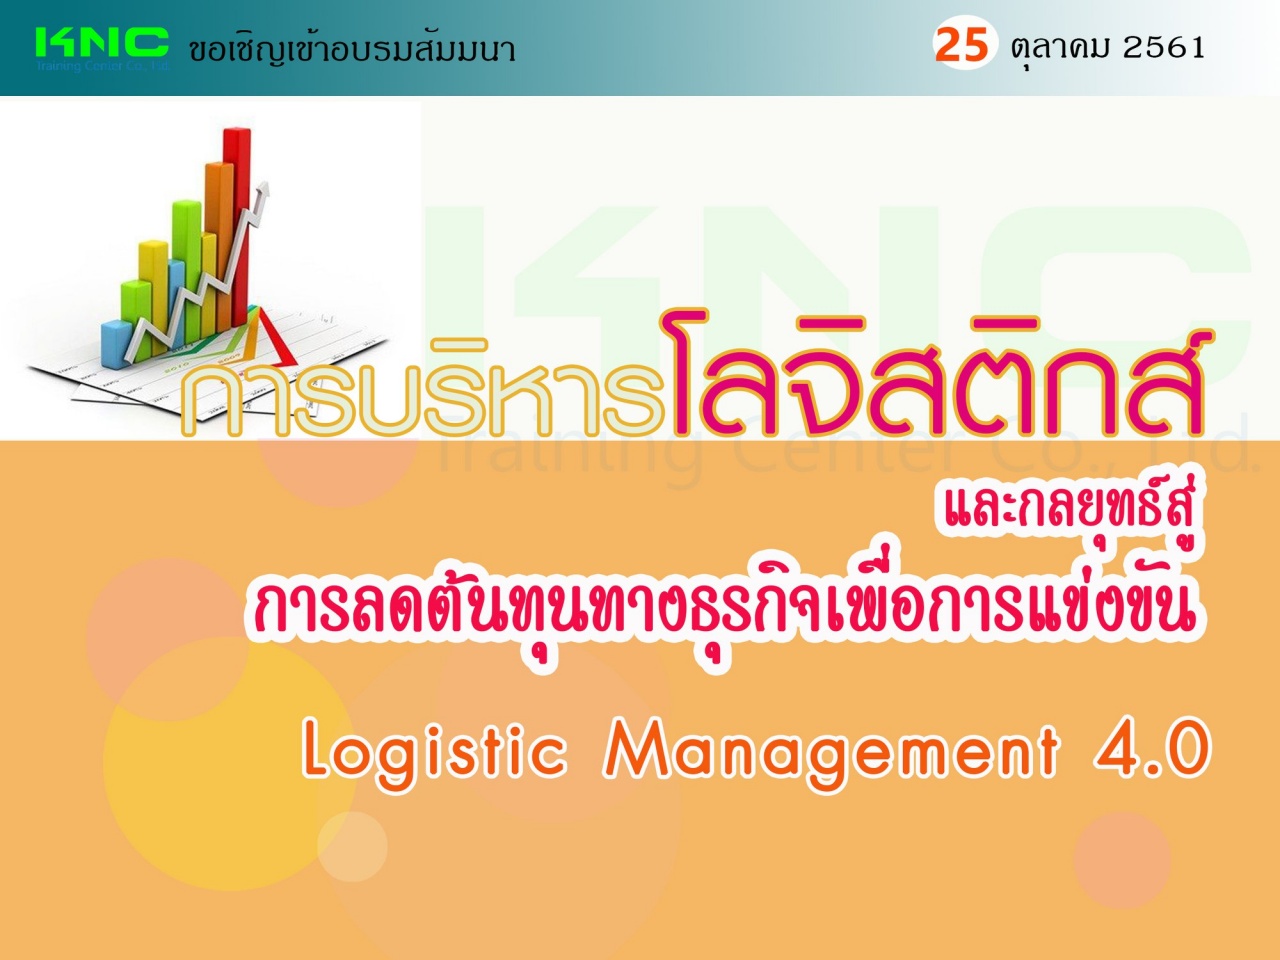 การบริหารโลจิสติกส์และกลยุทธ์สู่การลดต้นทุนทางธุรกิจเพื่อการแข่งขัน (Logistic Management 4.0)